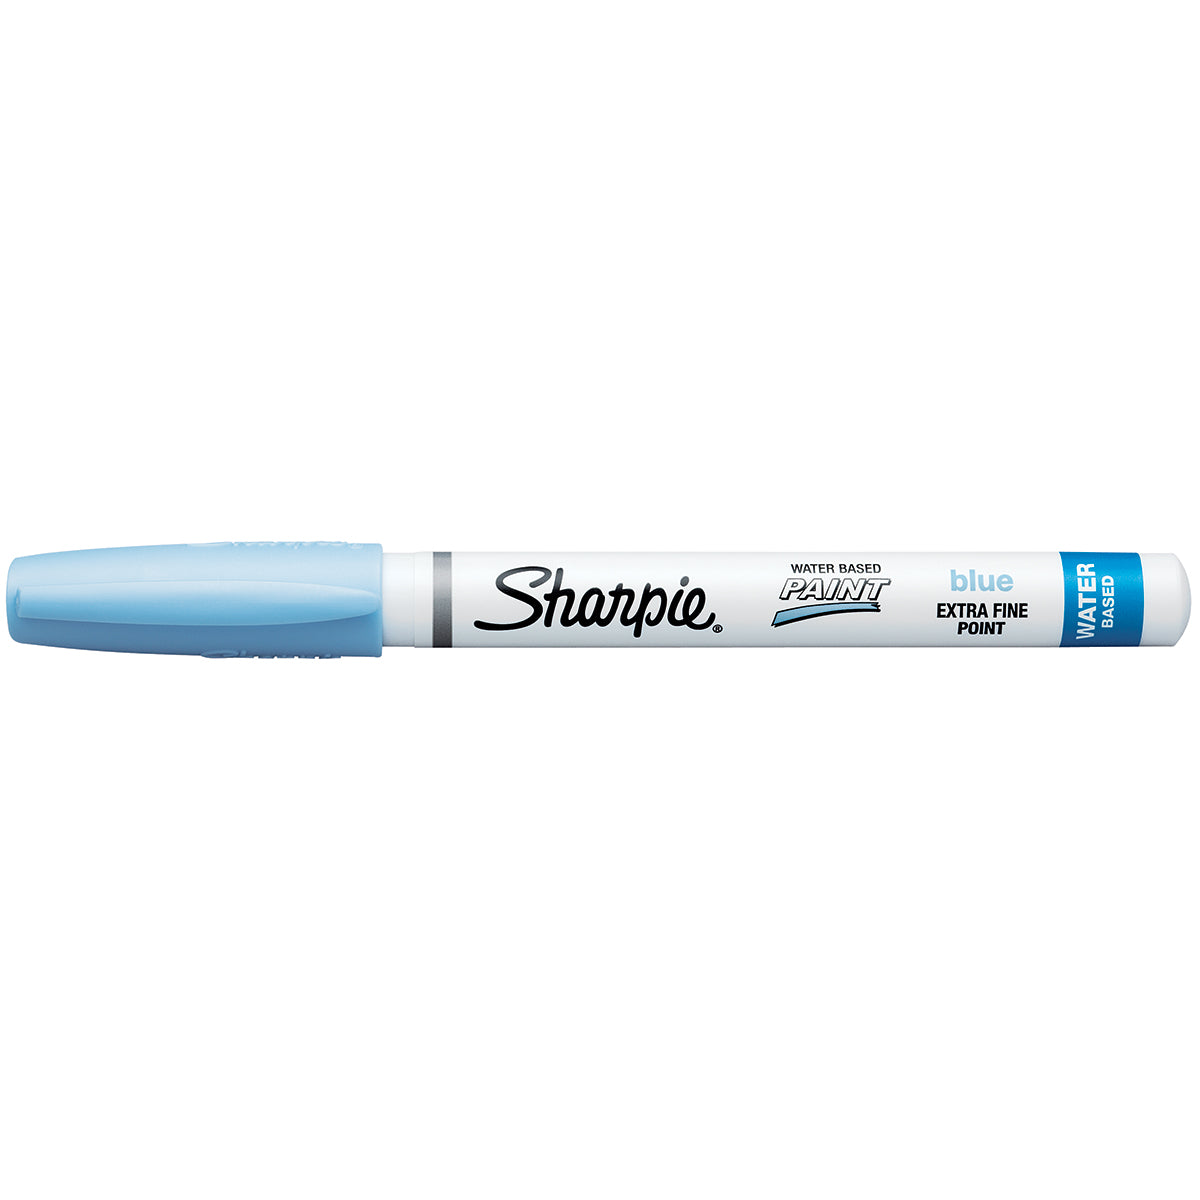 https://www.pensandpencils.net/cdn/shop/products/sharpie-pastel-blue--water-based-paint-markers.jpg?v=1543443850